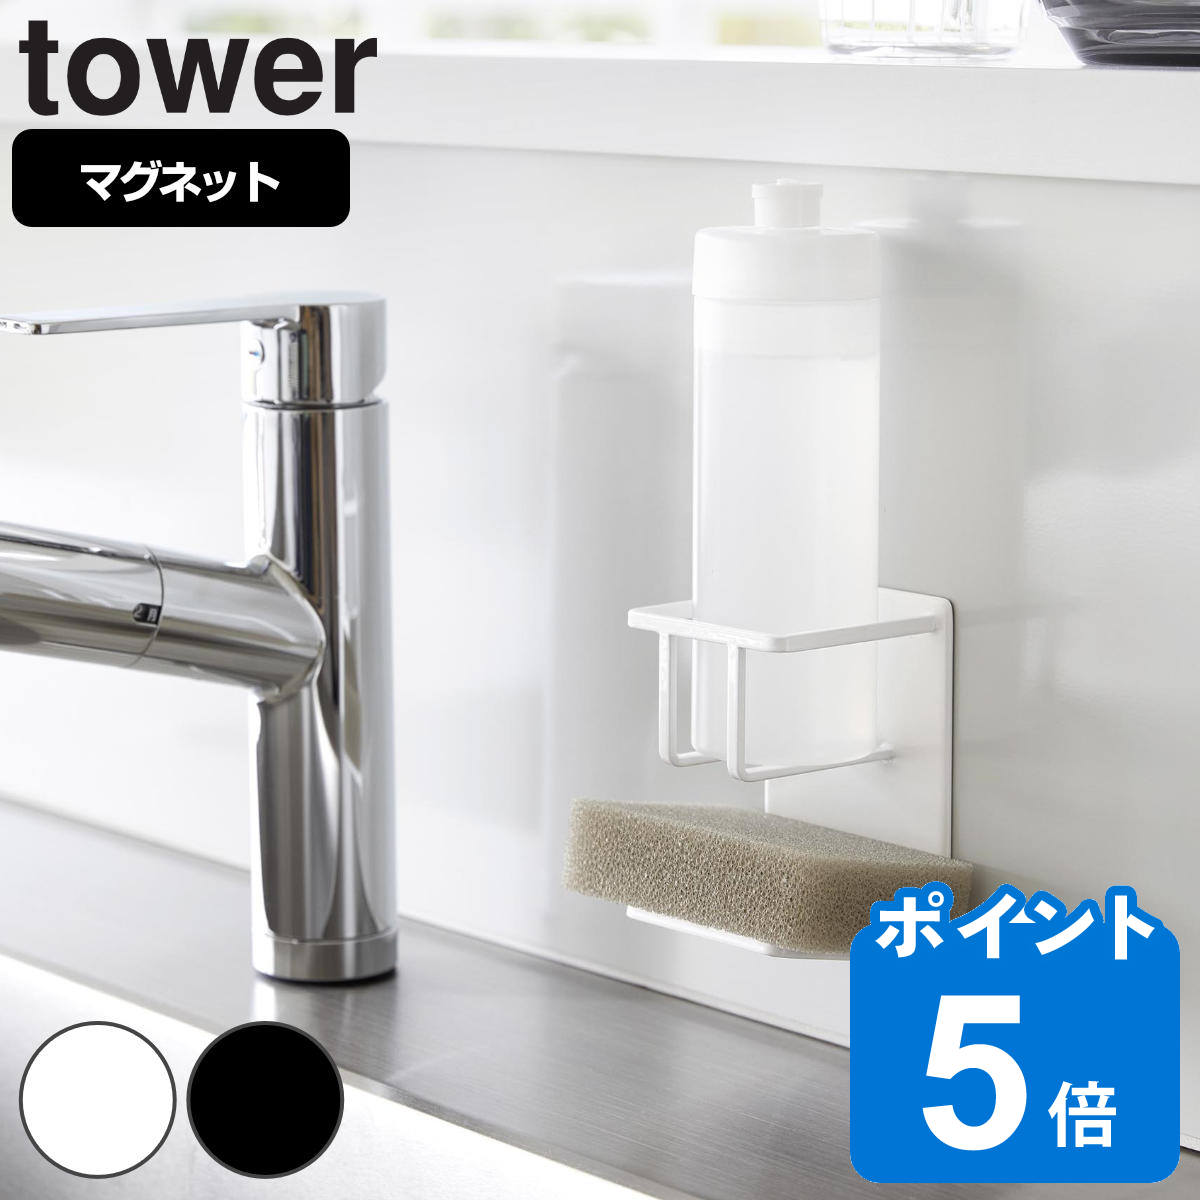 山崎実業 tower マグネットスポンジ&ボトルホルダー タワー